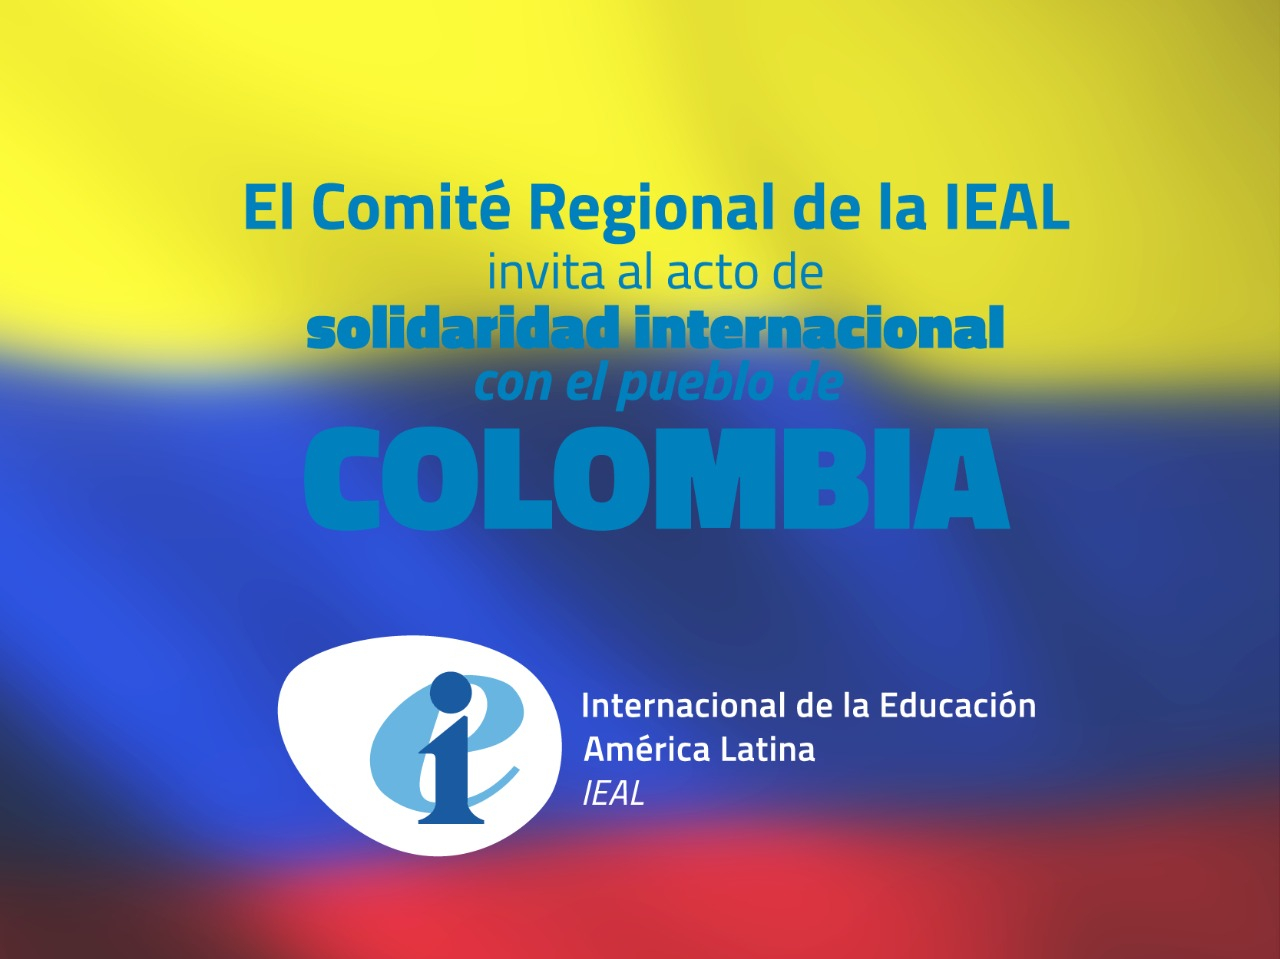 Comité Regional de la IEAL convoca a acto de solidaridad internacional con el pueblo de Colombia